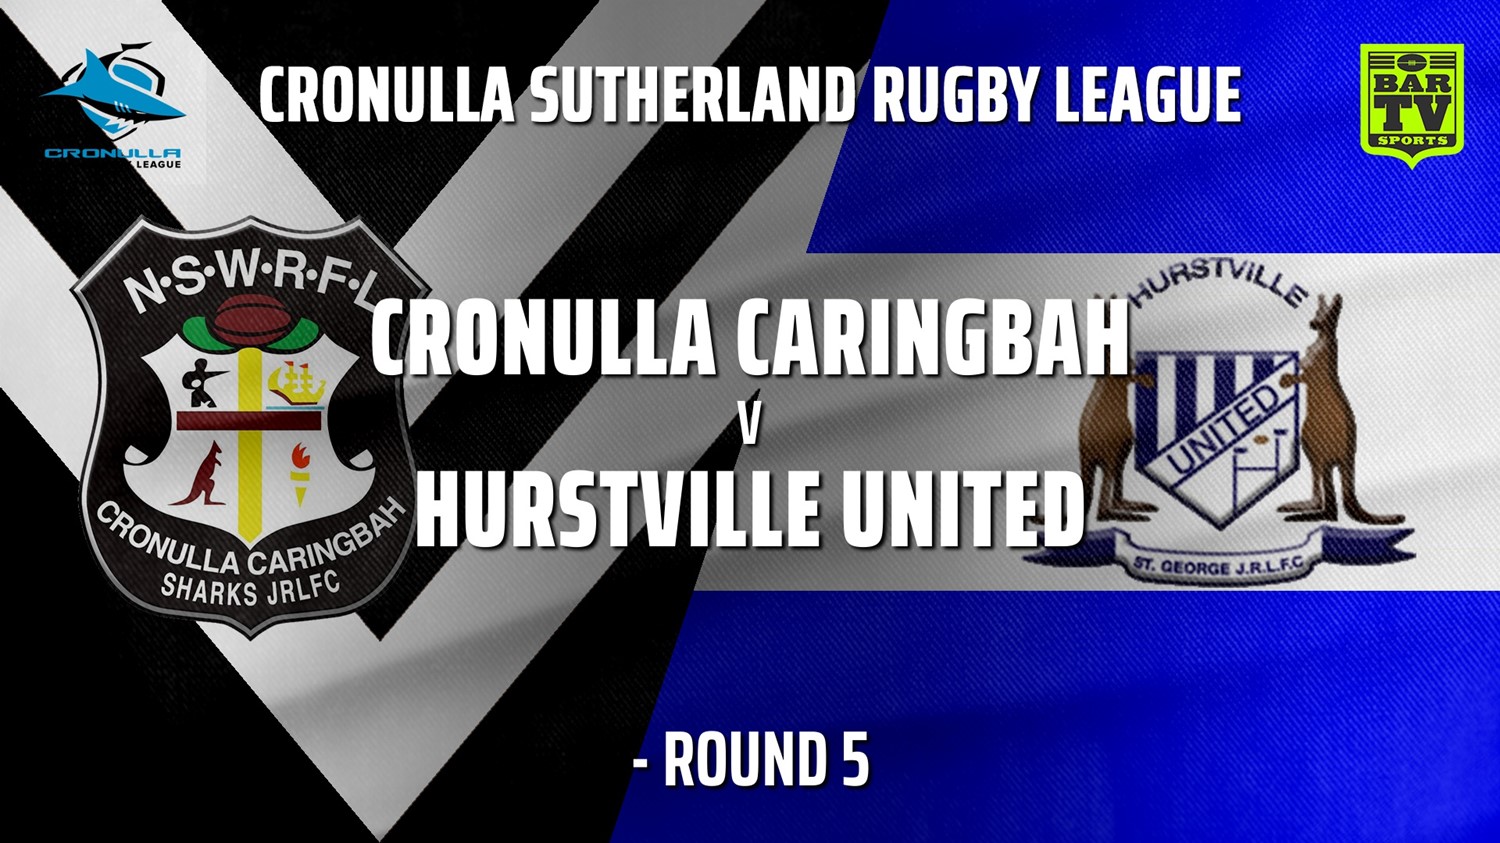 210530-Cronulla JRL - Under 20s - Round 5 - Cronulla Caringbah v Hurstville United Slate Image